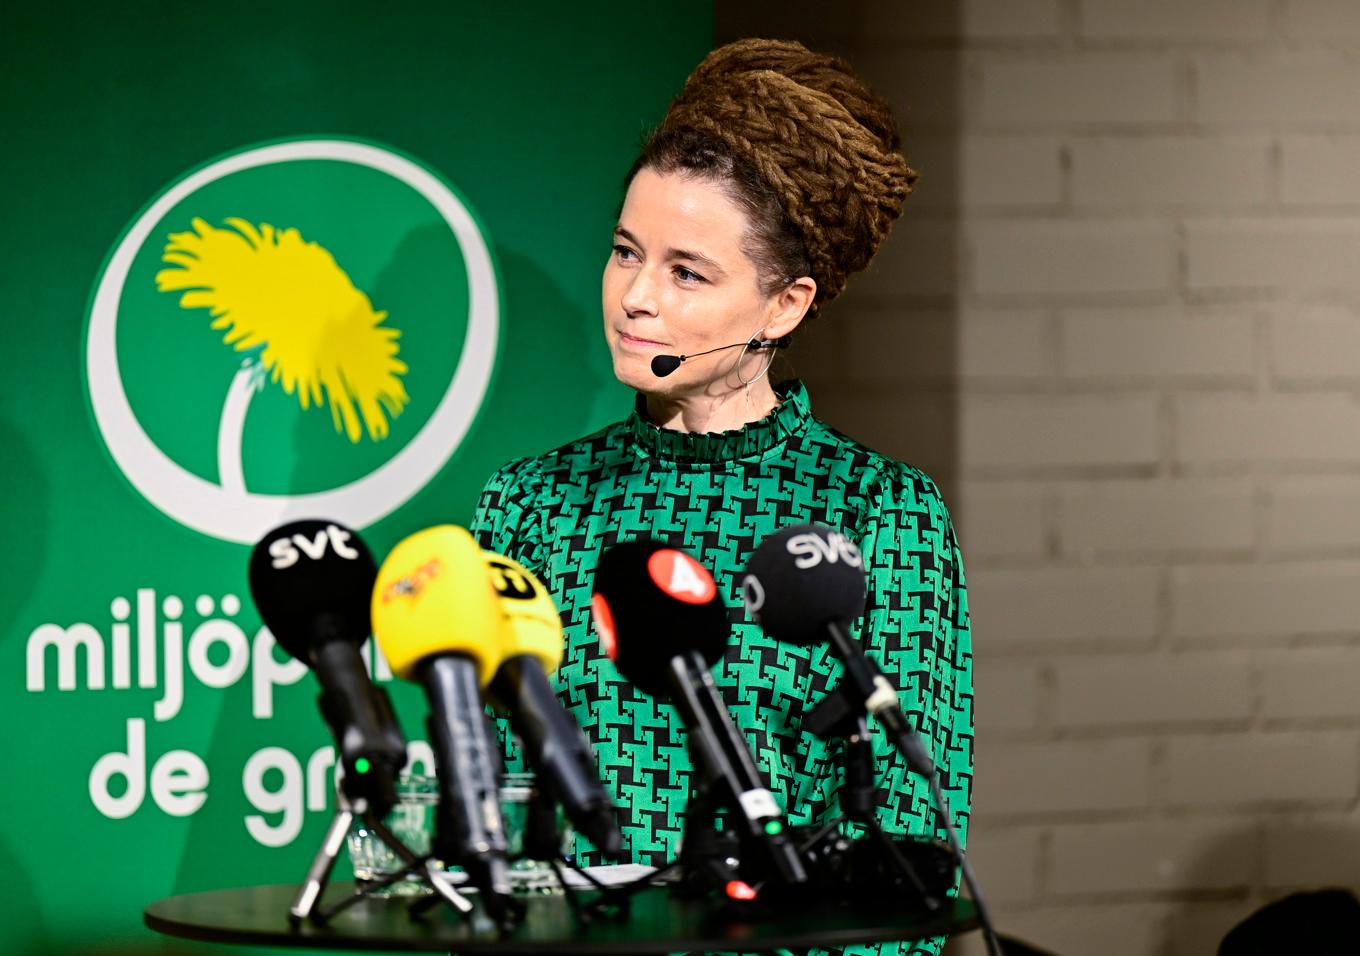 Miljöpartiets valberedning presenterar Amanda Lind som förslag till nytt språkrör under en pressträff på söndagen. Foto: Magnus Lejhall/TT